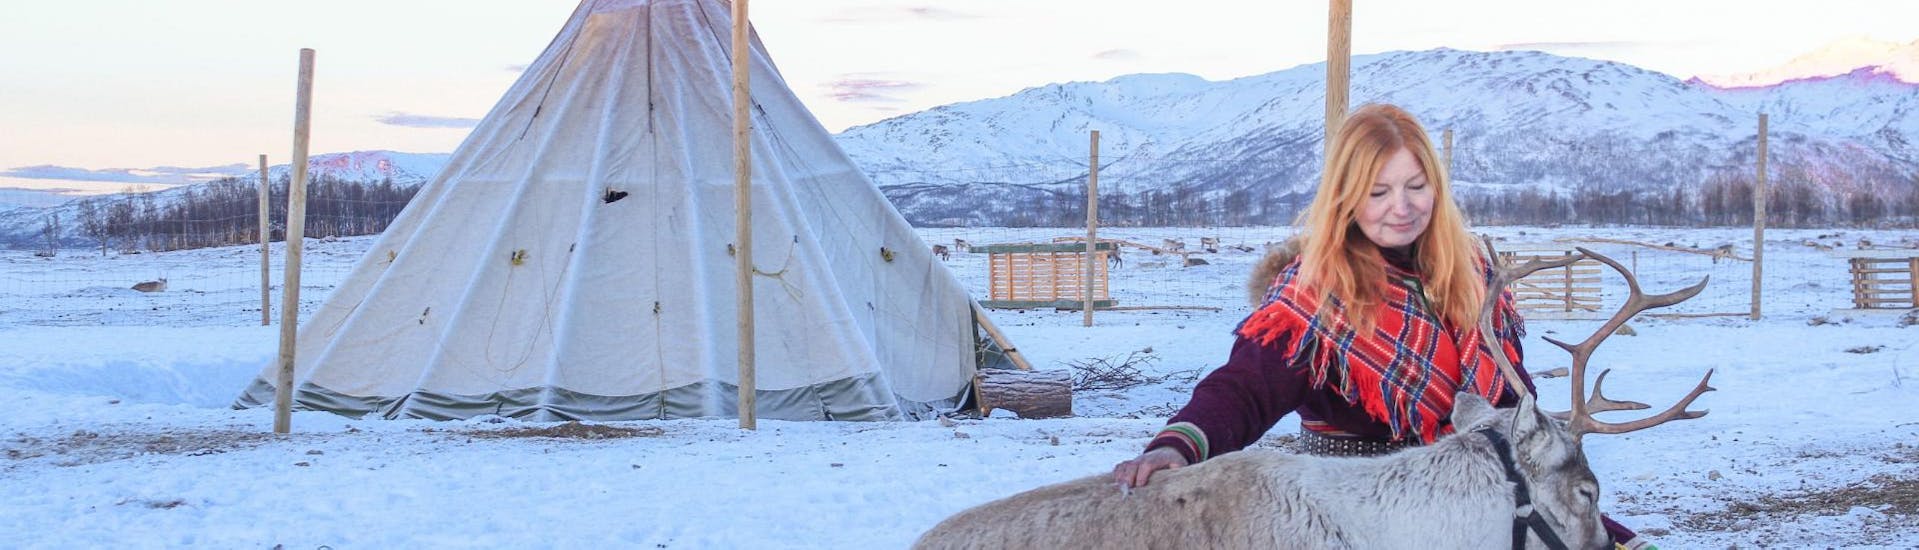 Tijdens de Avond in het Samikamp & Rendiervoedering in Tromsø voert een vrouw in traditionele Sami-kleding de rendieren in het rendierkamp van Tromsø Arctic Reindeer.